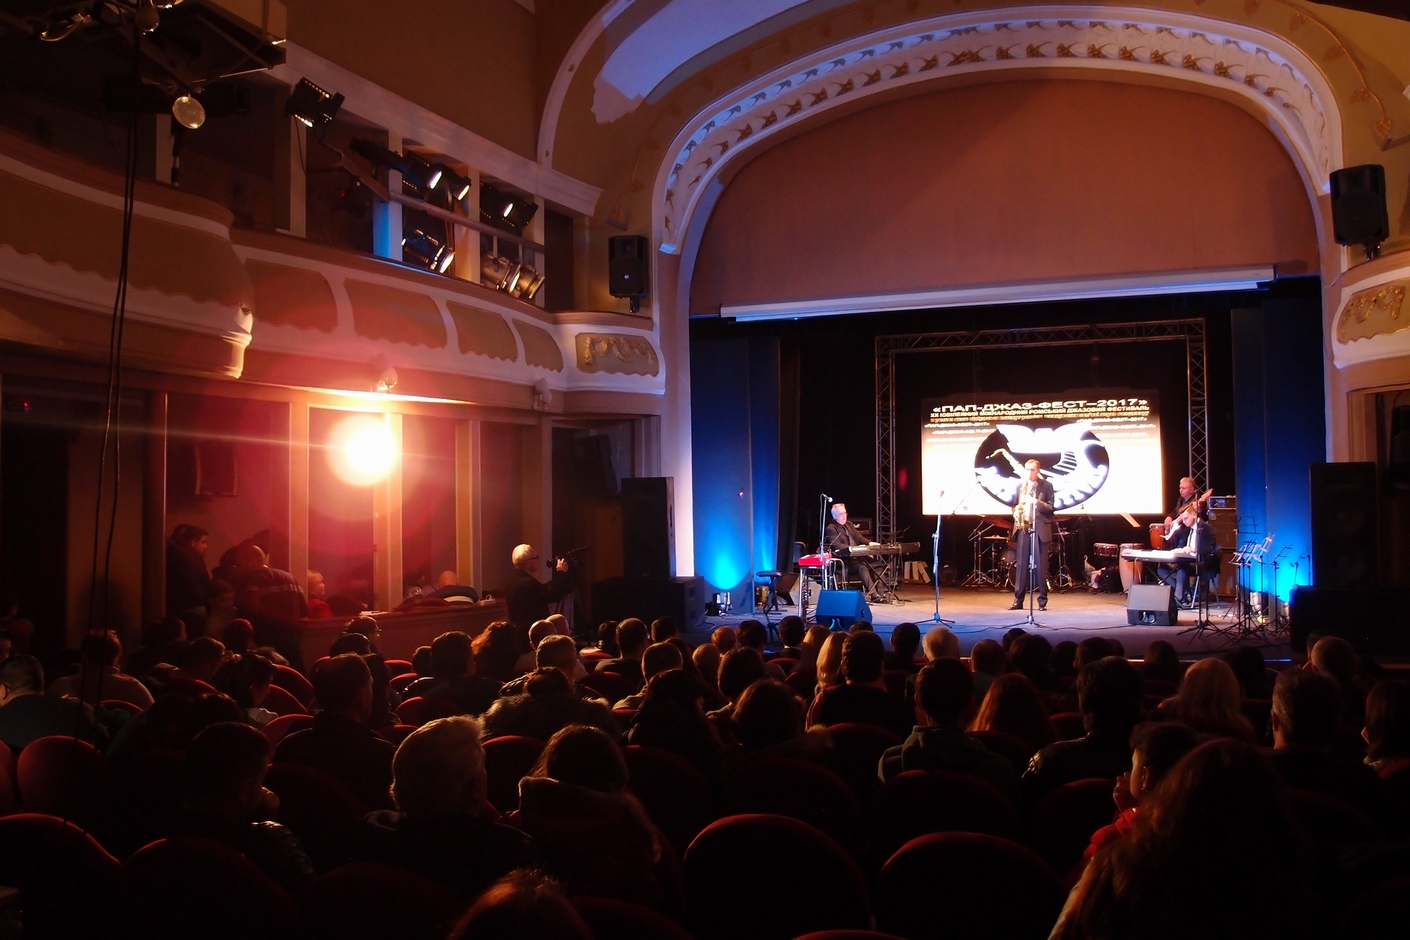 XX-й "ПАП-ДЖАЗ-ФЕСТ" в Ужгороді  символічно відкрили "Мелодією" Мирослава Скорика (ФОТО)